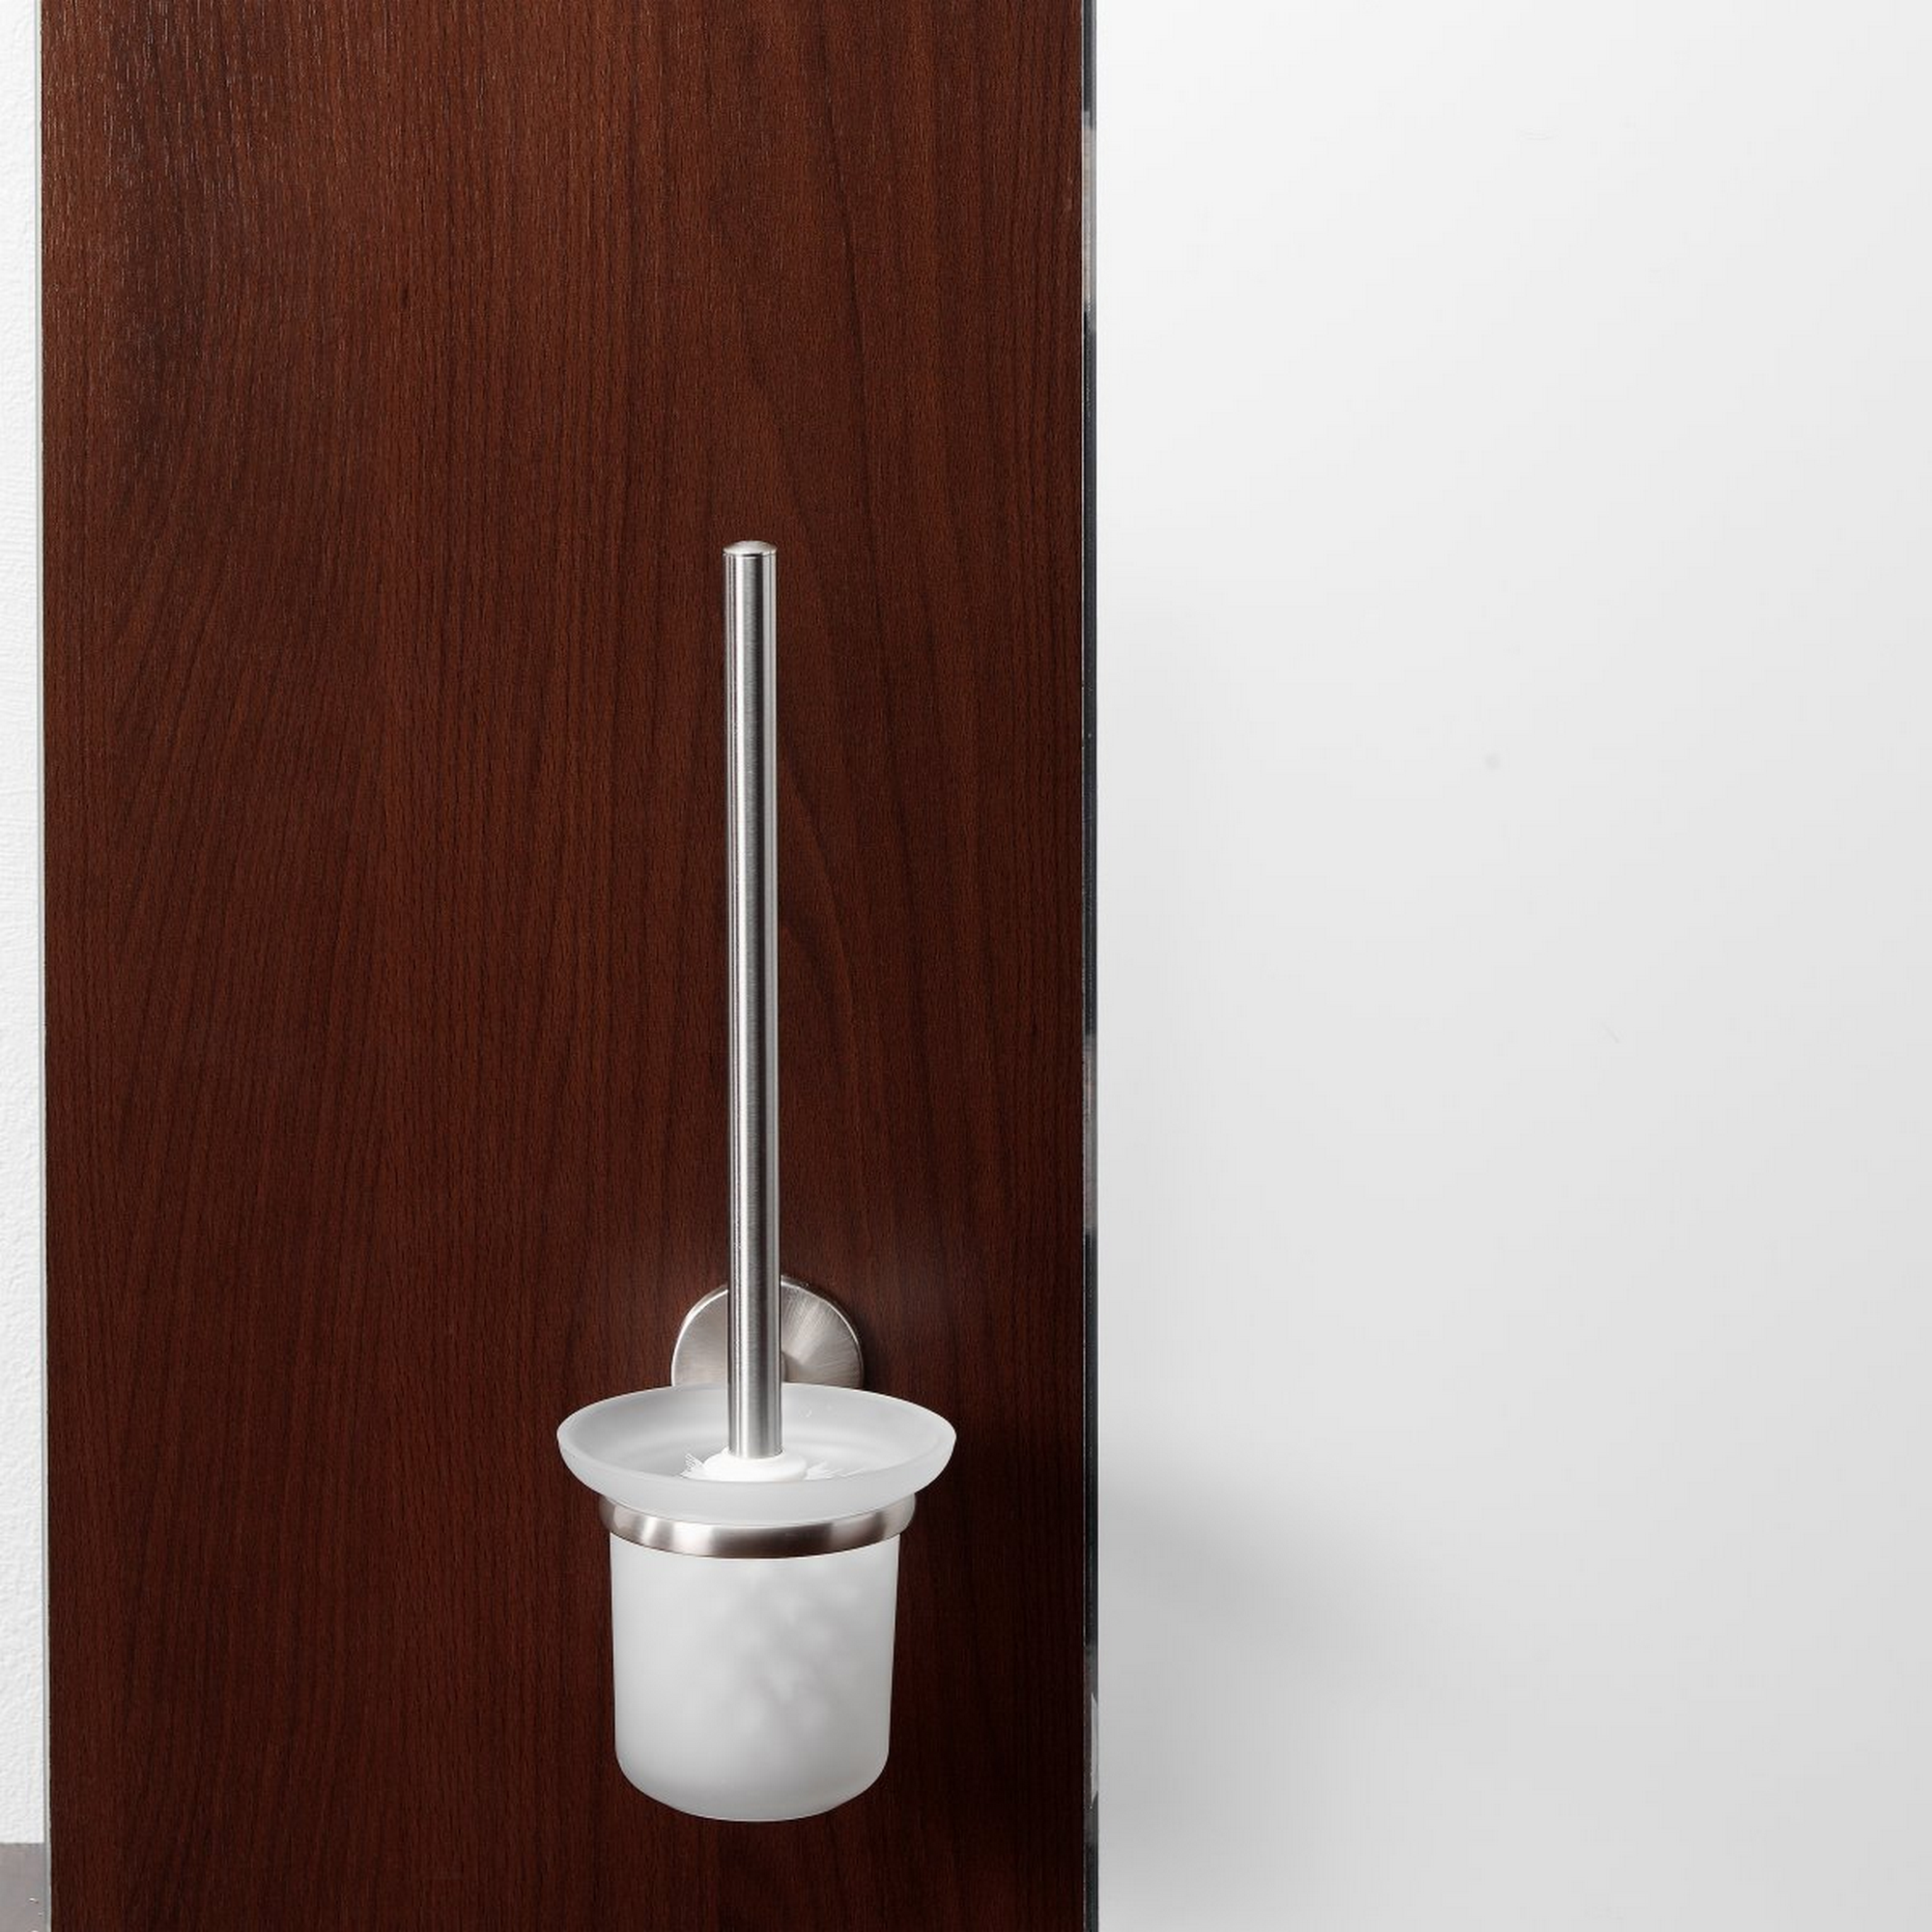 WC-Bürstengarnitur 'Fusion' wandhängend rund gebürstet/weiß + product picture